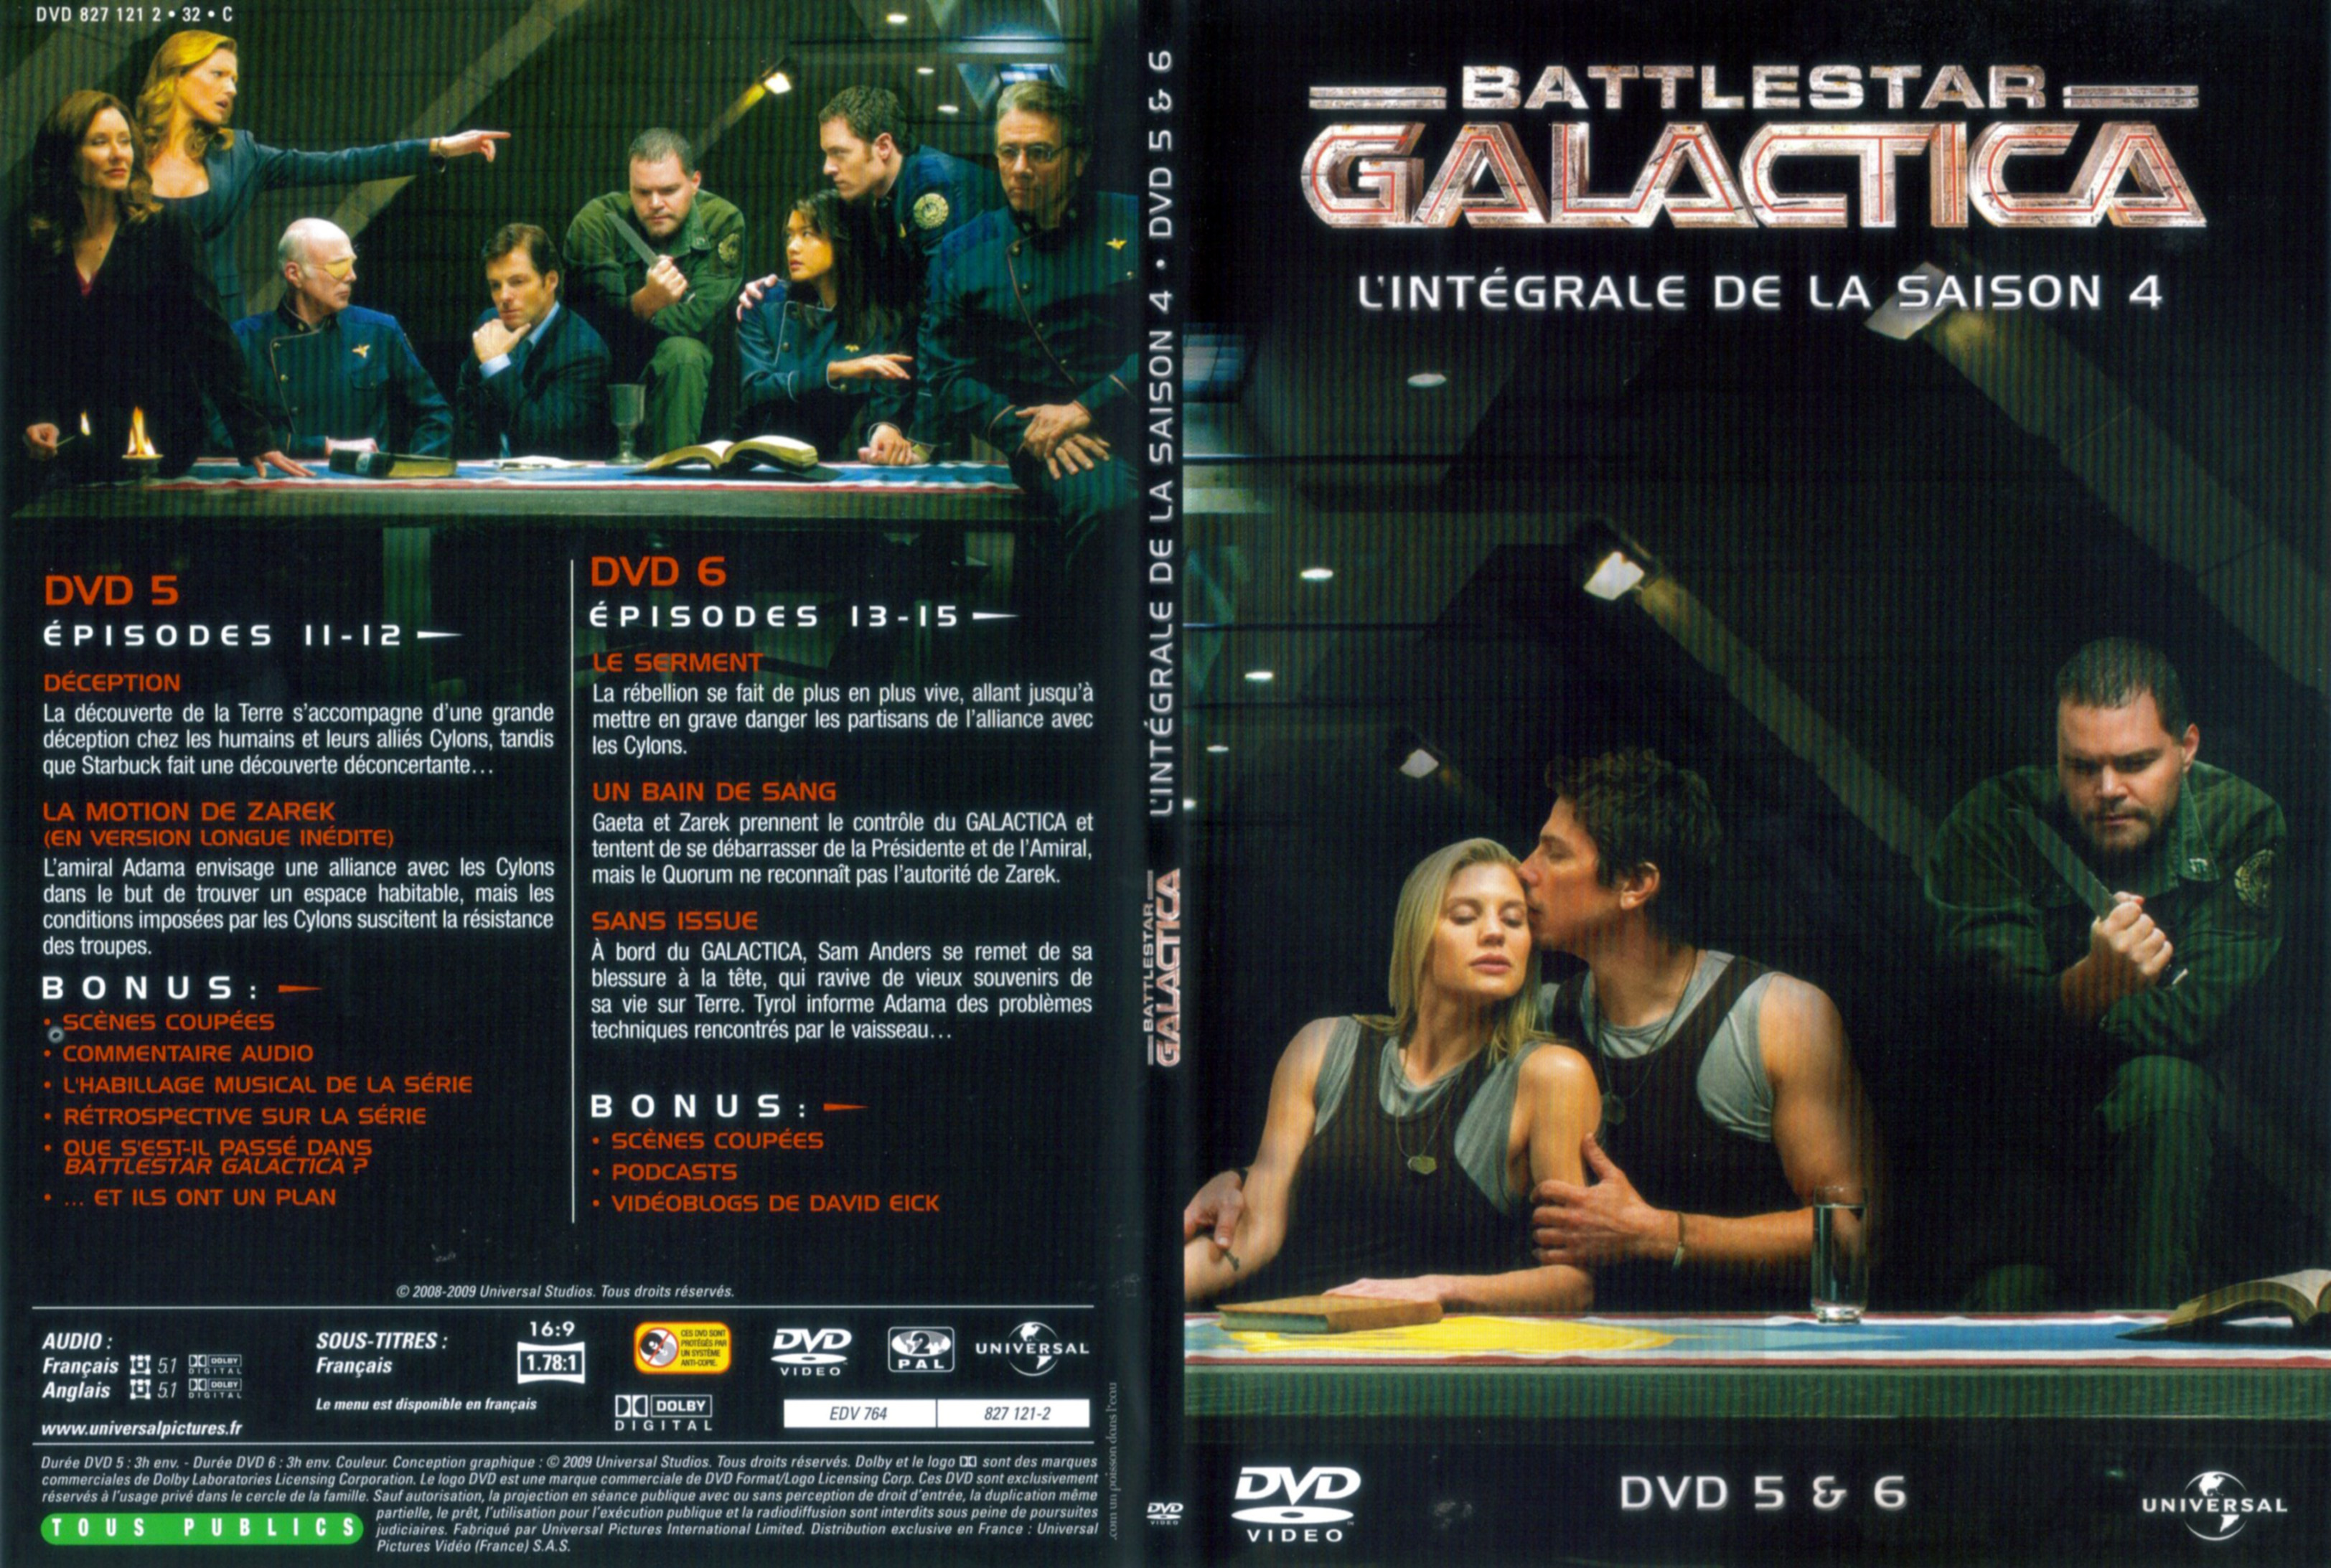 Jaquette DVD Battlestar Galactica Saison 4 DVD 3